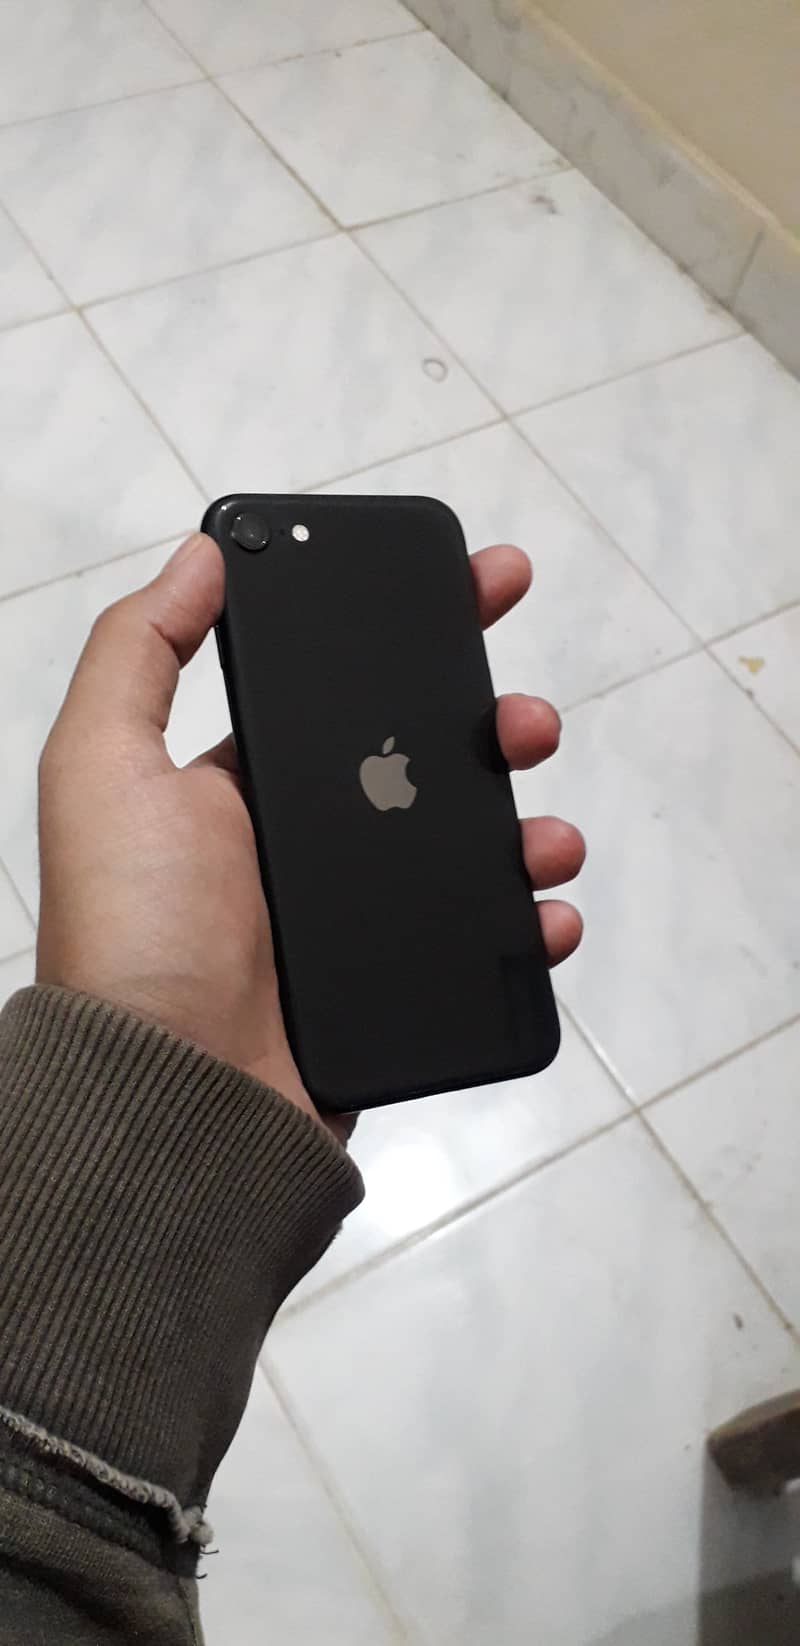 PTA approve Apple iPhone SE 2020 8